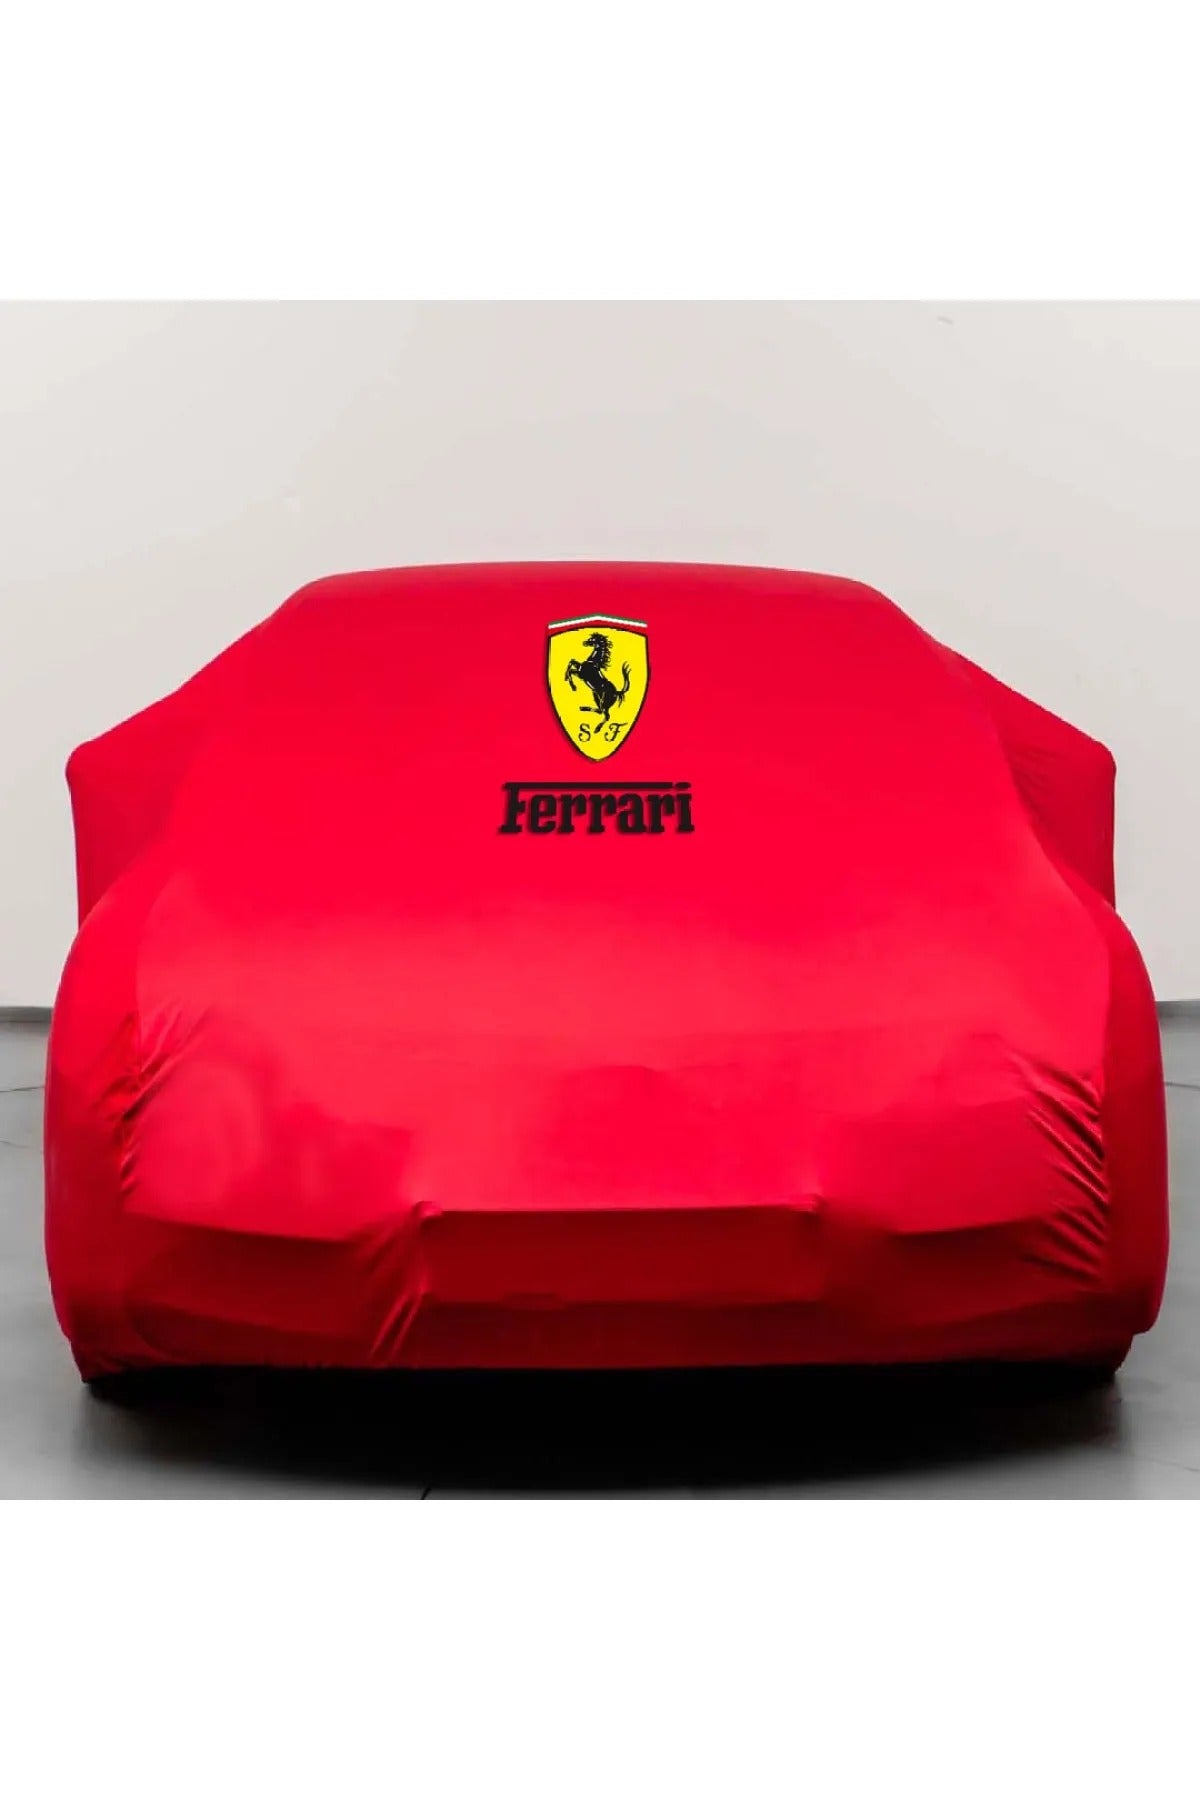 Ferrari-Autoabdeckung, ALLE MODELLE CUSTOM FİT, Ferrari-Autoschutz